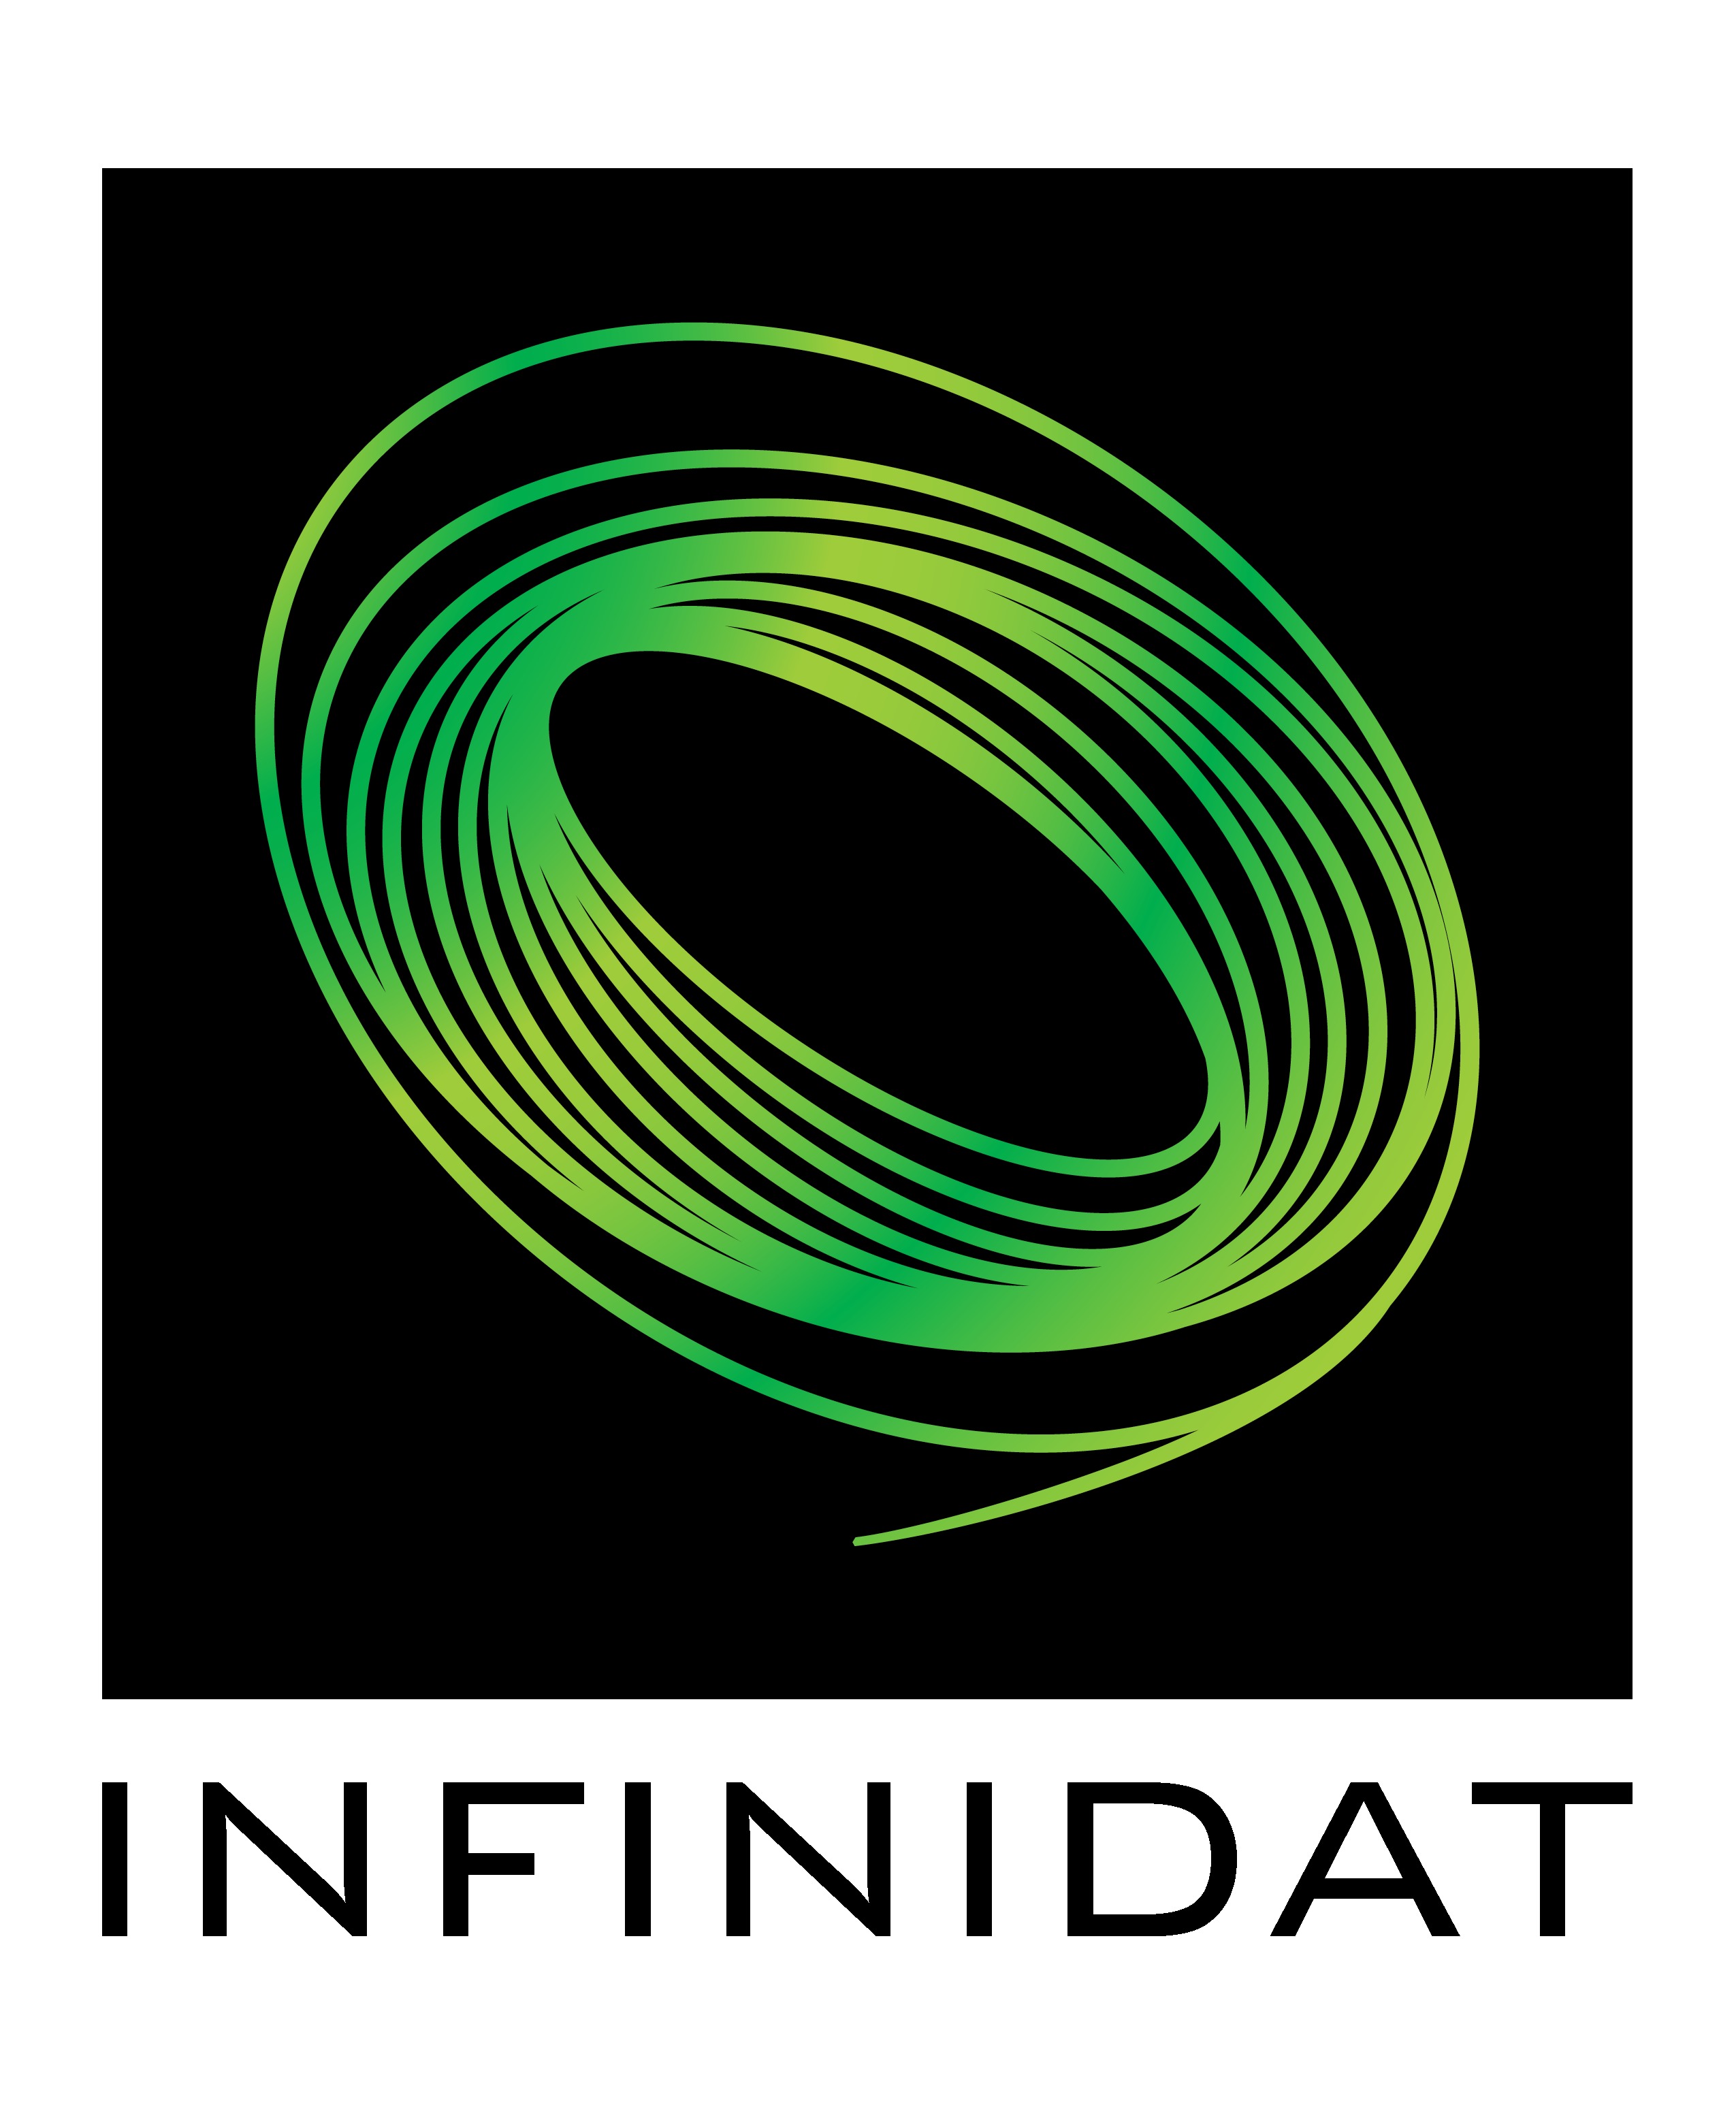 Infinidat, www.infinidat.com